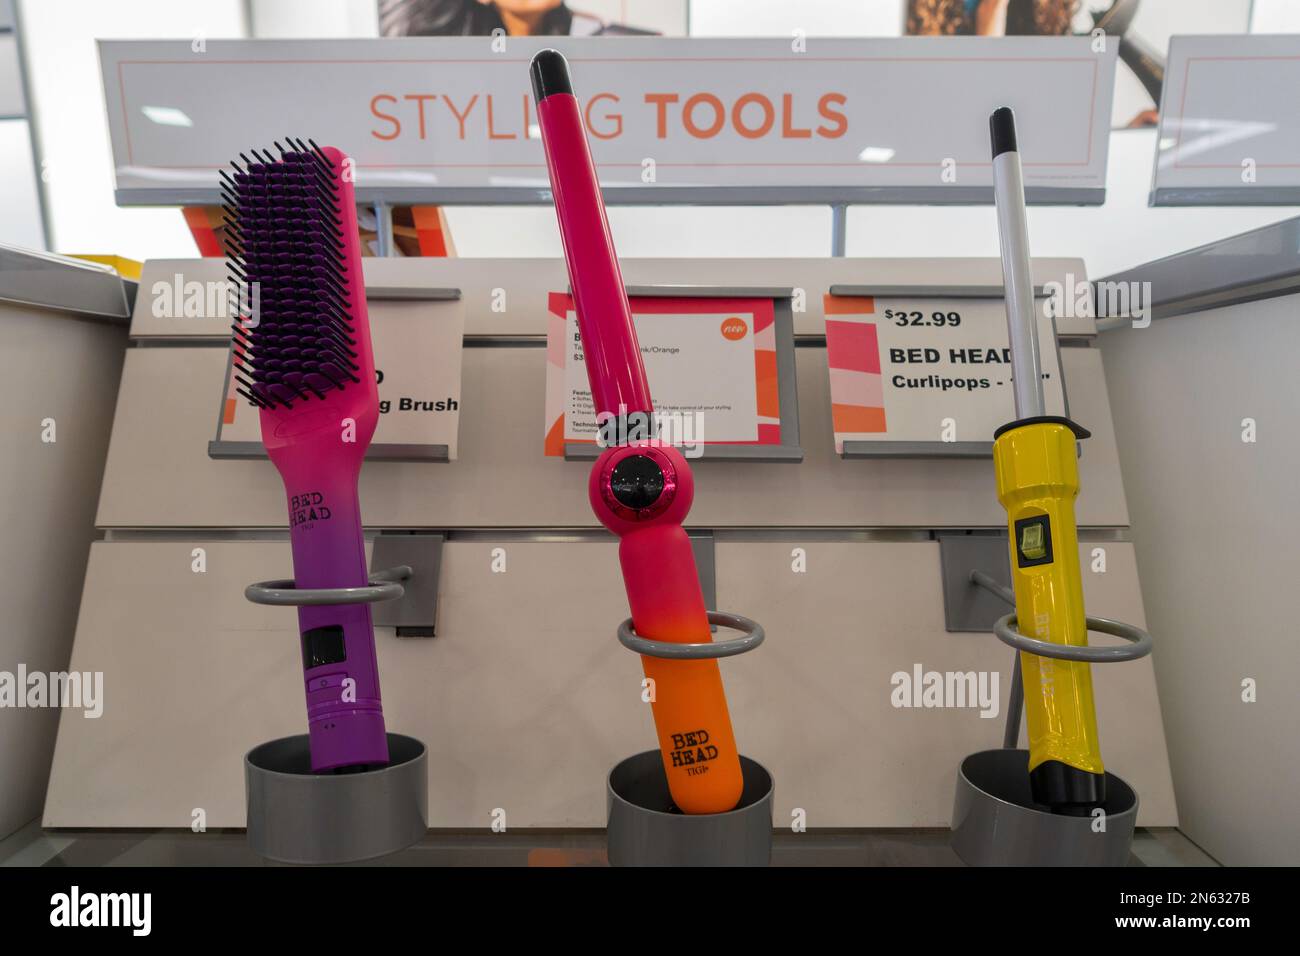 Les outils de coiffage de la tête de lit, y compris une brosse et deux fers à friser sur une étagère de magasin. ÉTATS-UNIS. Banque D'Images